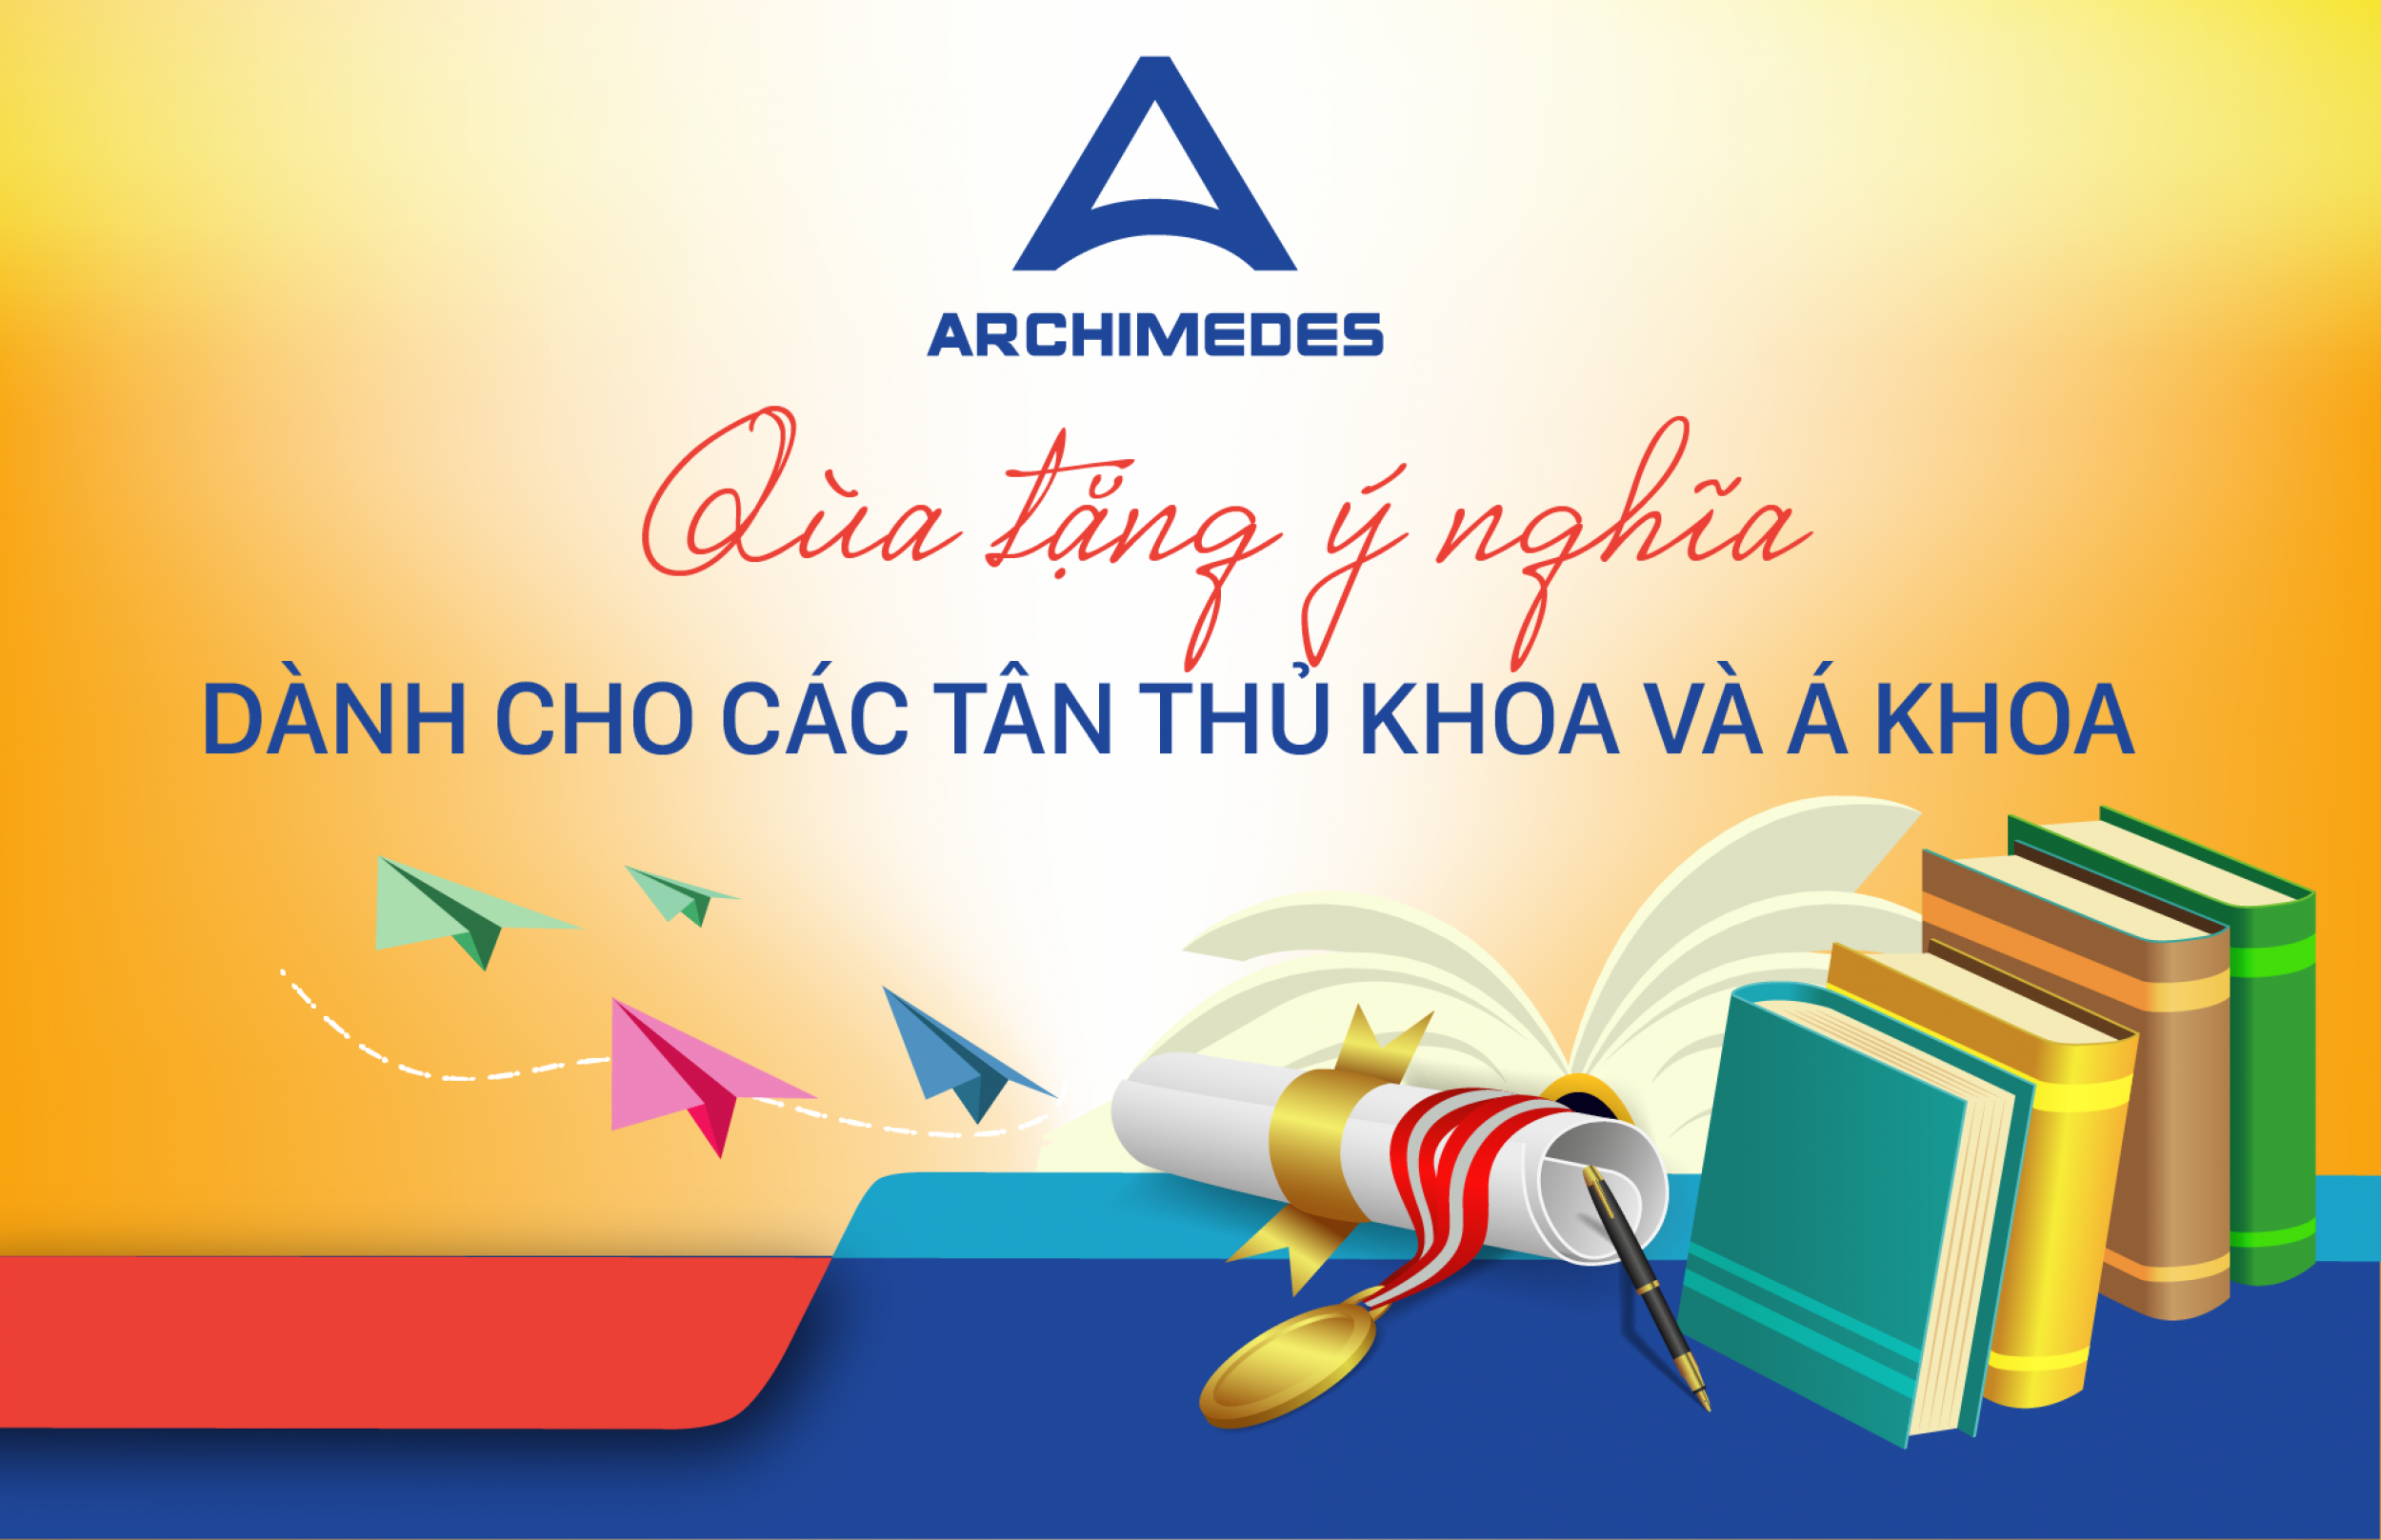 Archimedes School dành tặng món quà ý nghĩa cho các tân Thủ khoa và Á khoa